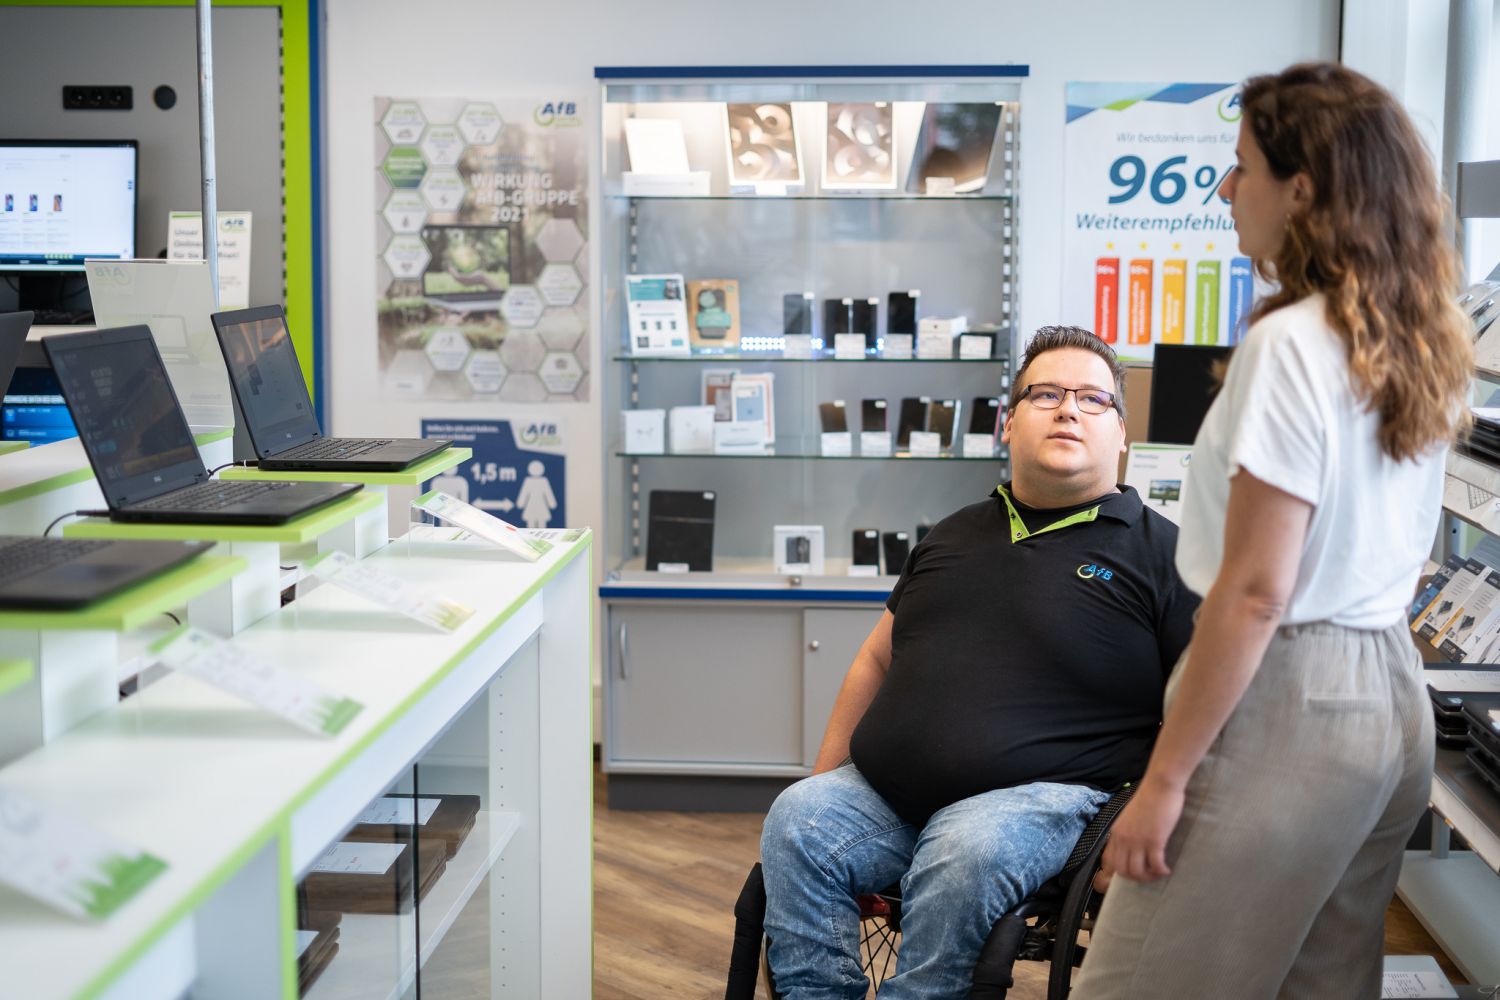 Verkäufer von AfB im Rollstuhl führt Gespräch mit Kundin